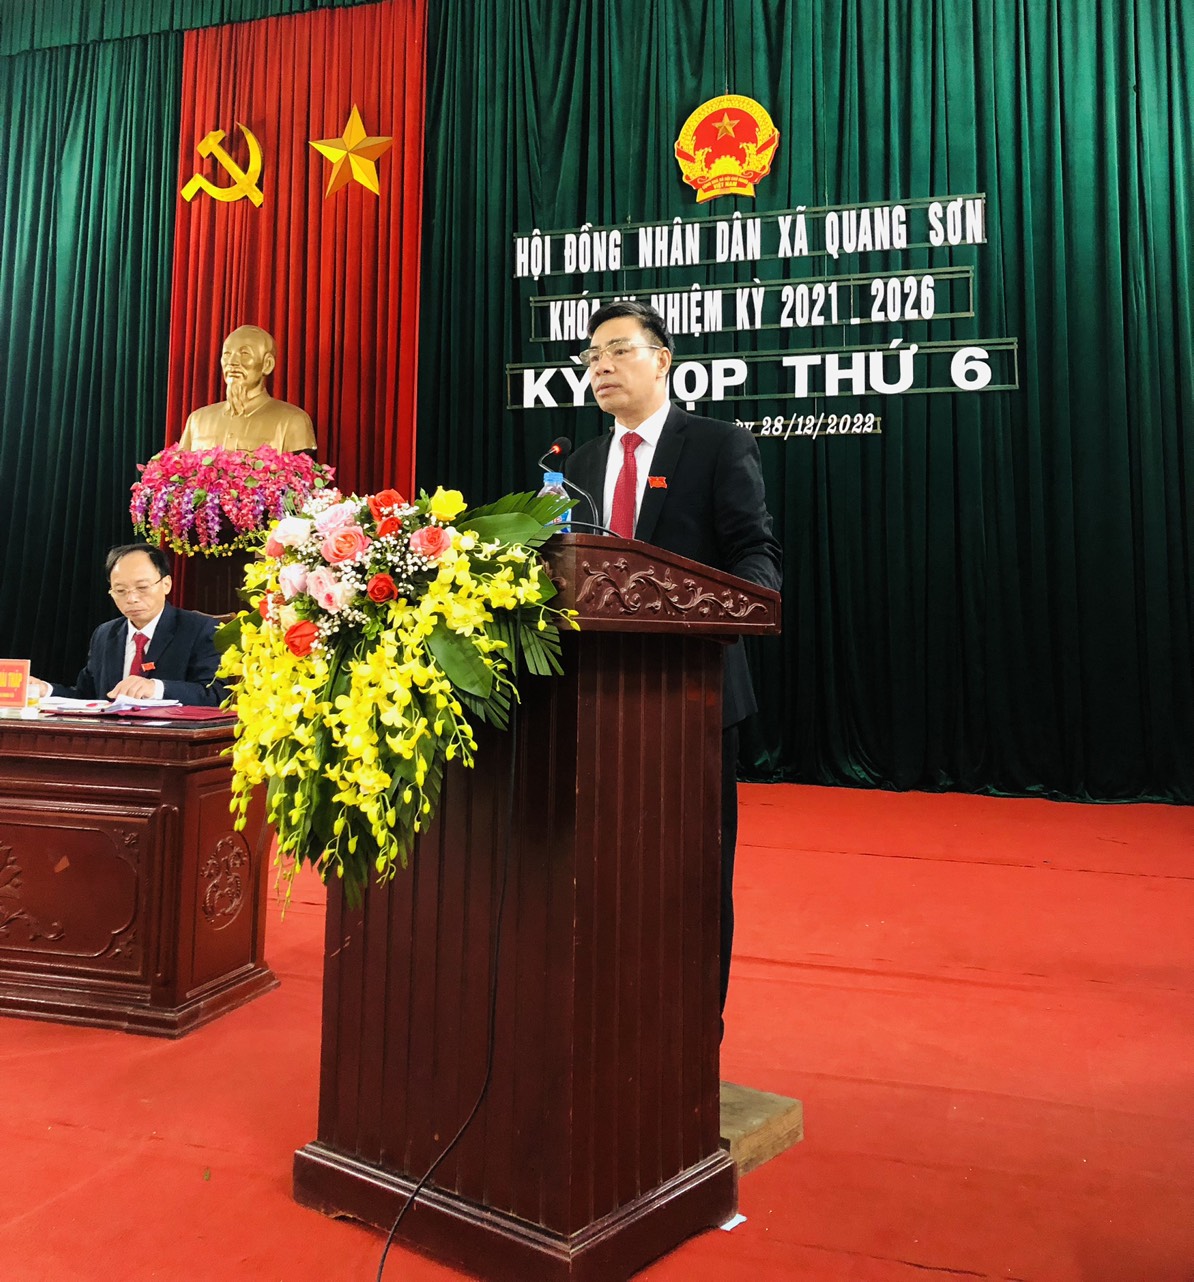 HĐND xã Quang Sơn khóa IX nhiệm kỳ 2021 -2026 đã tổ chức kỳ họp thứ 6